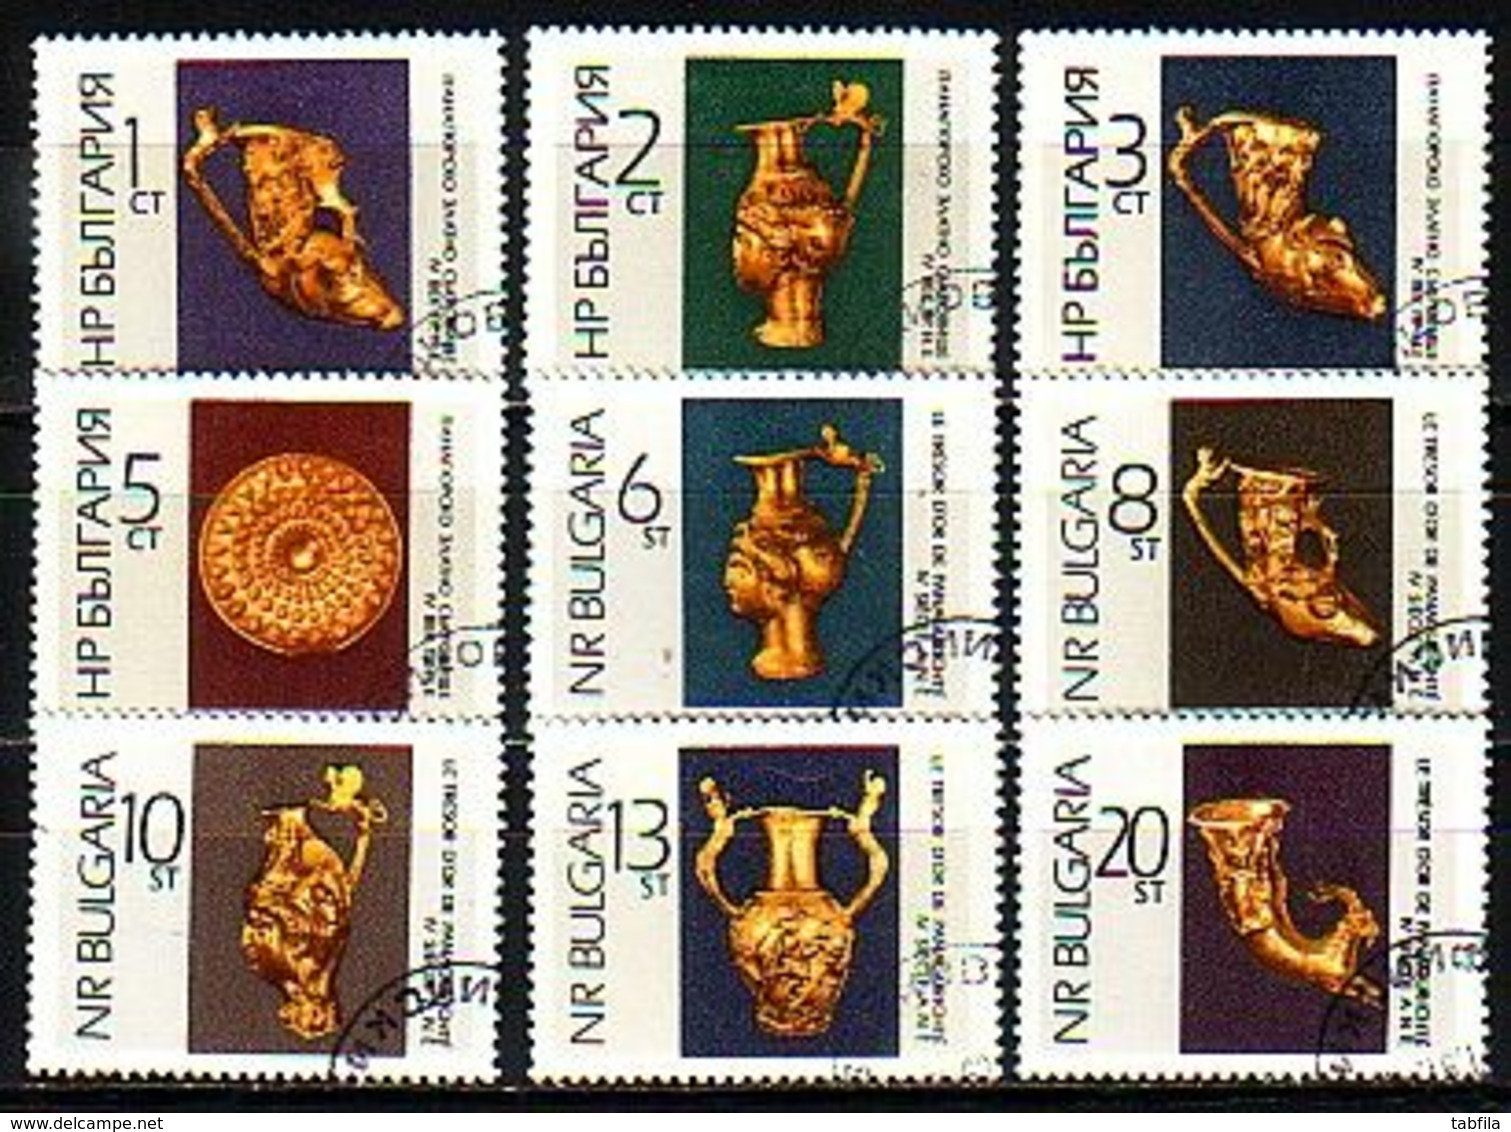 BULGARIA / BULGARIE - 1966 - Tresor D'or De Panagurishte - 9v (O) - Used Stamps